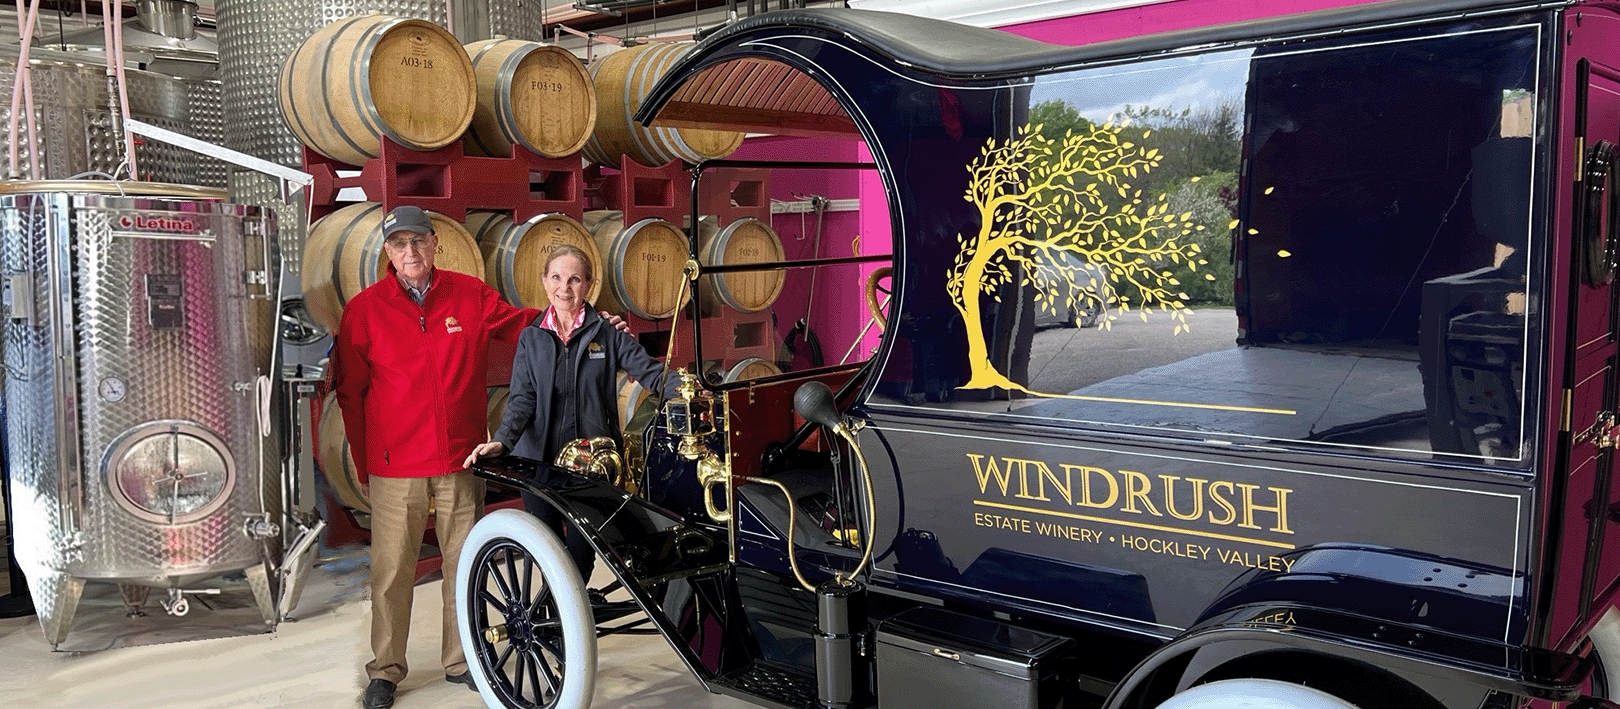 Windrush Winery